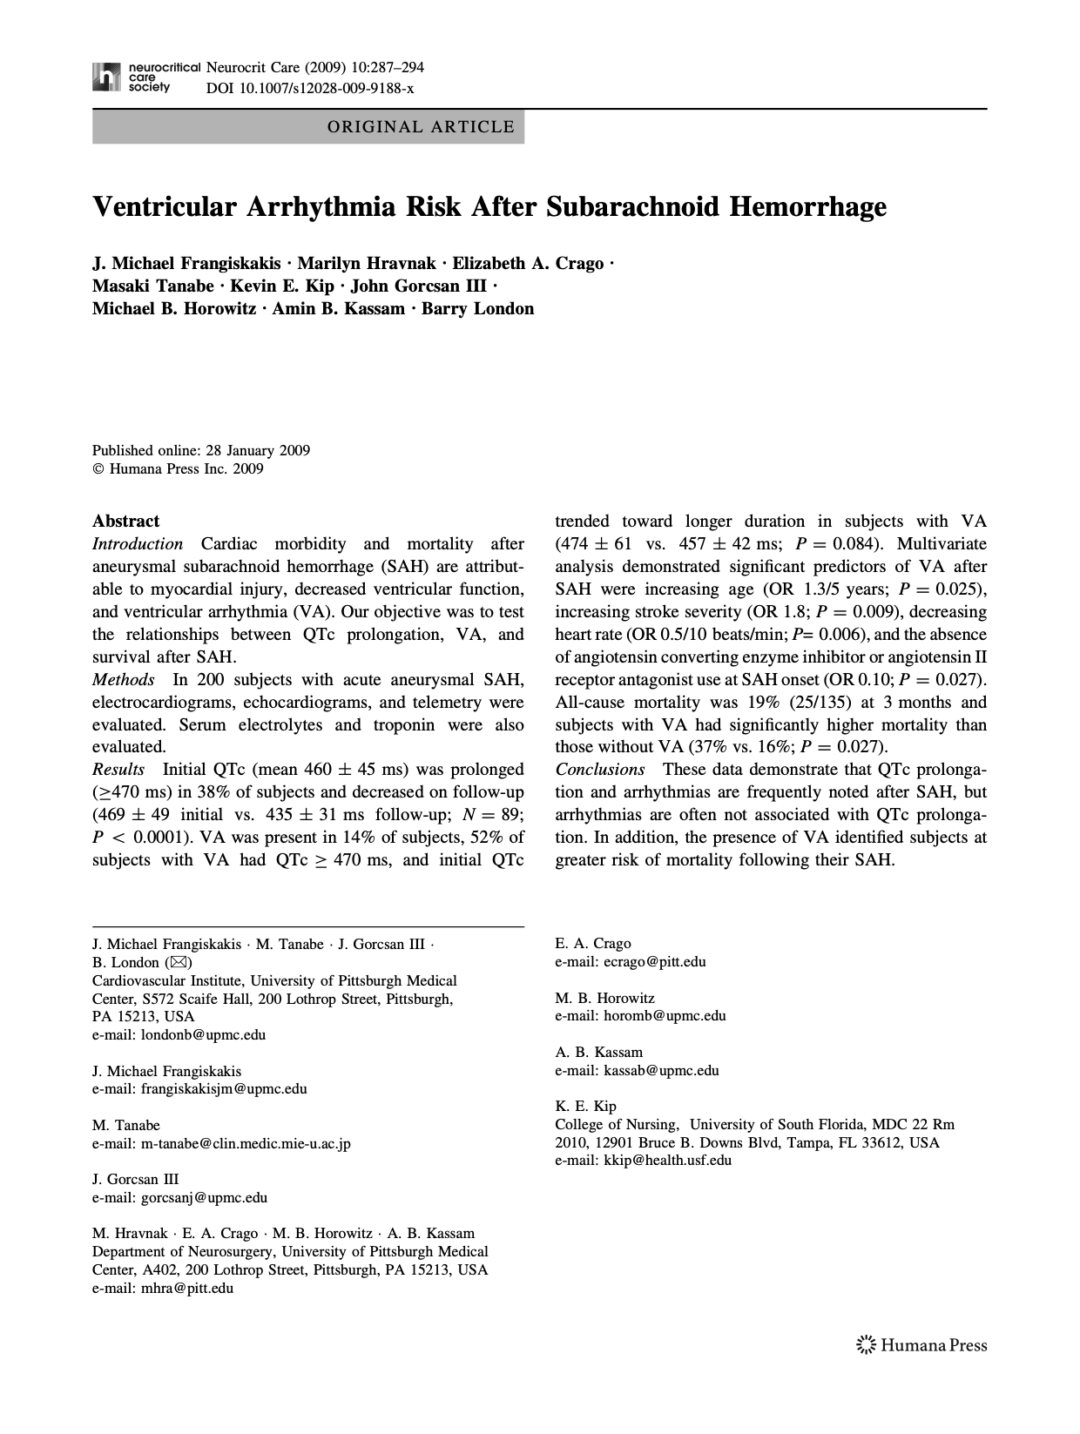 Ventricular Arrhythmia Risk After Subarachnoid Hemorrhage